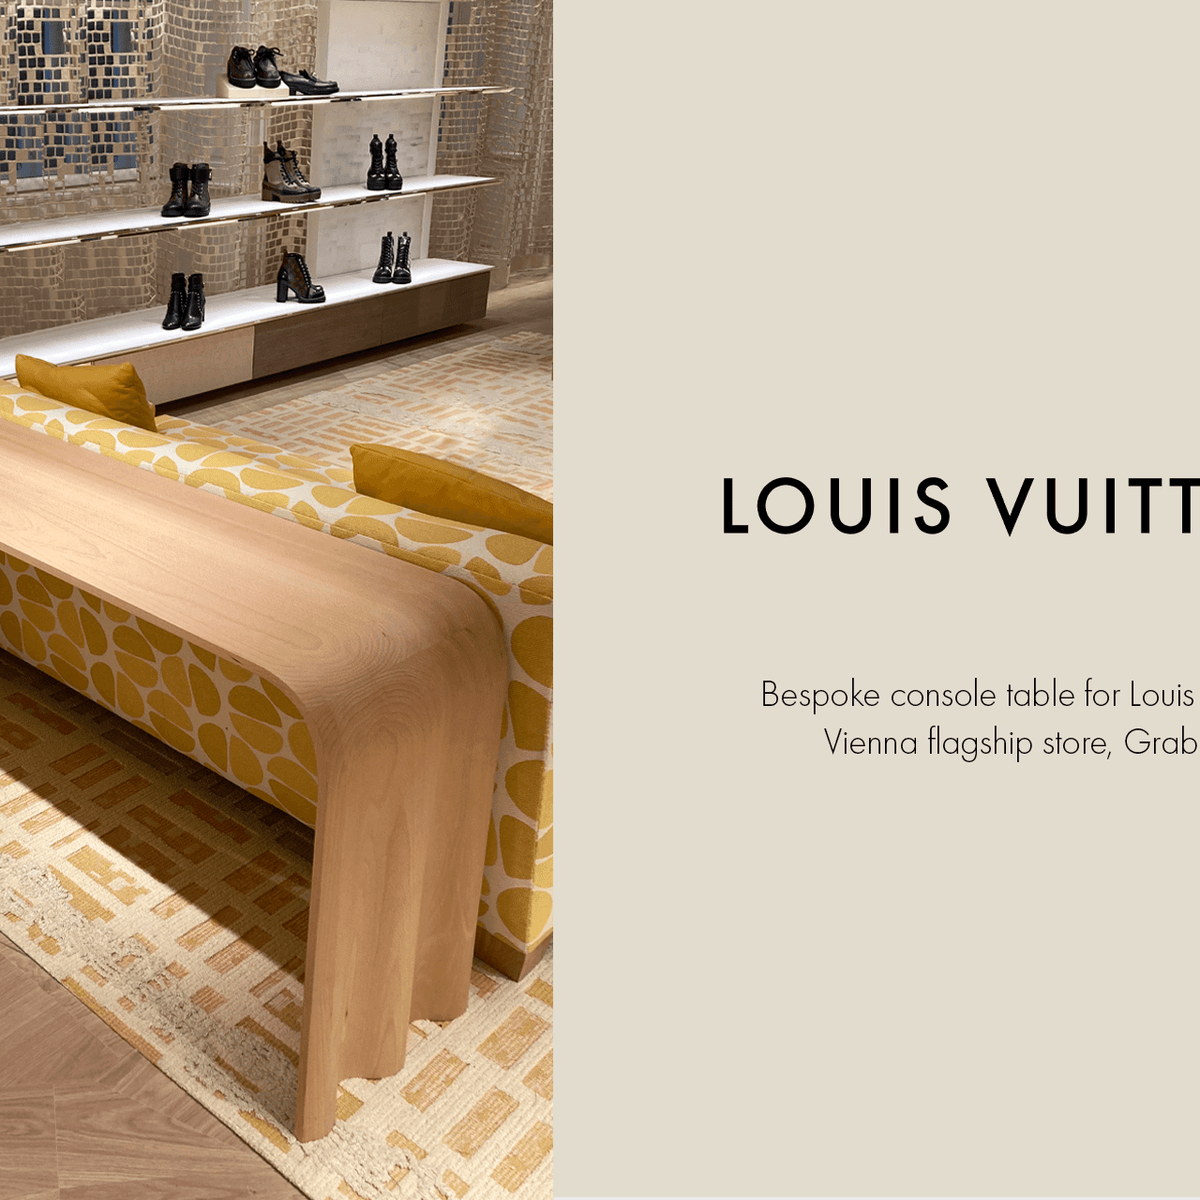 Louis Vuitton Vienna store, Austria